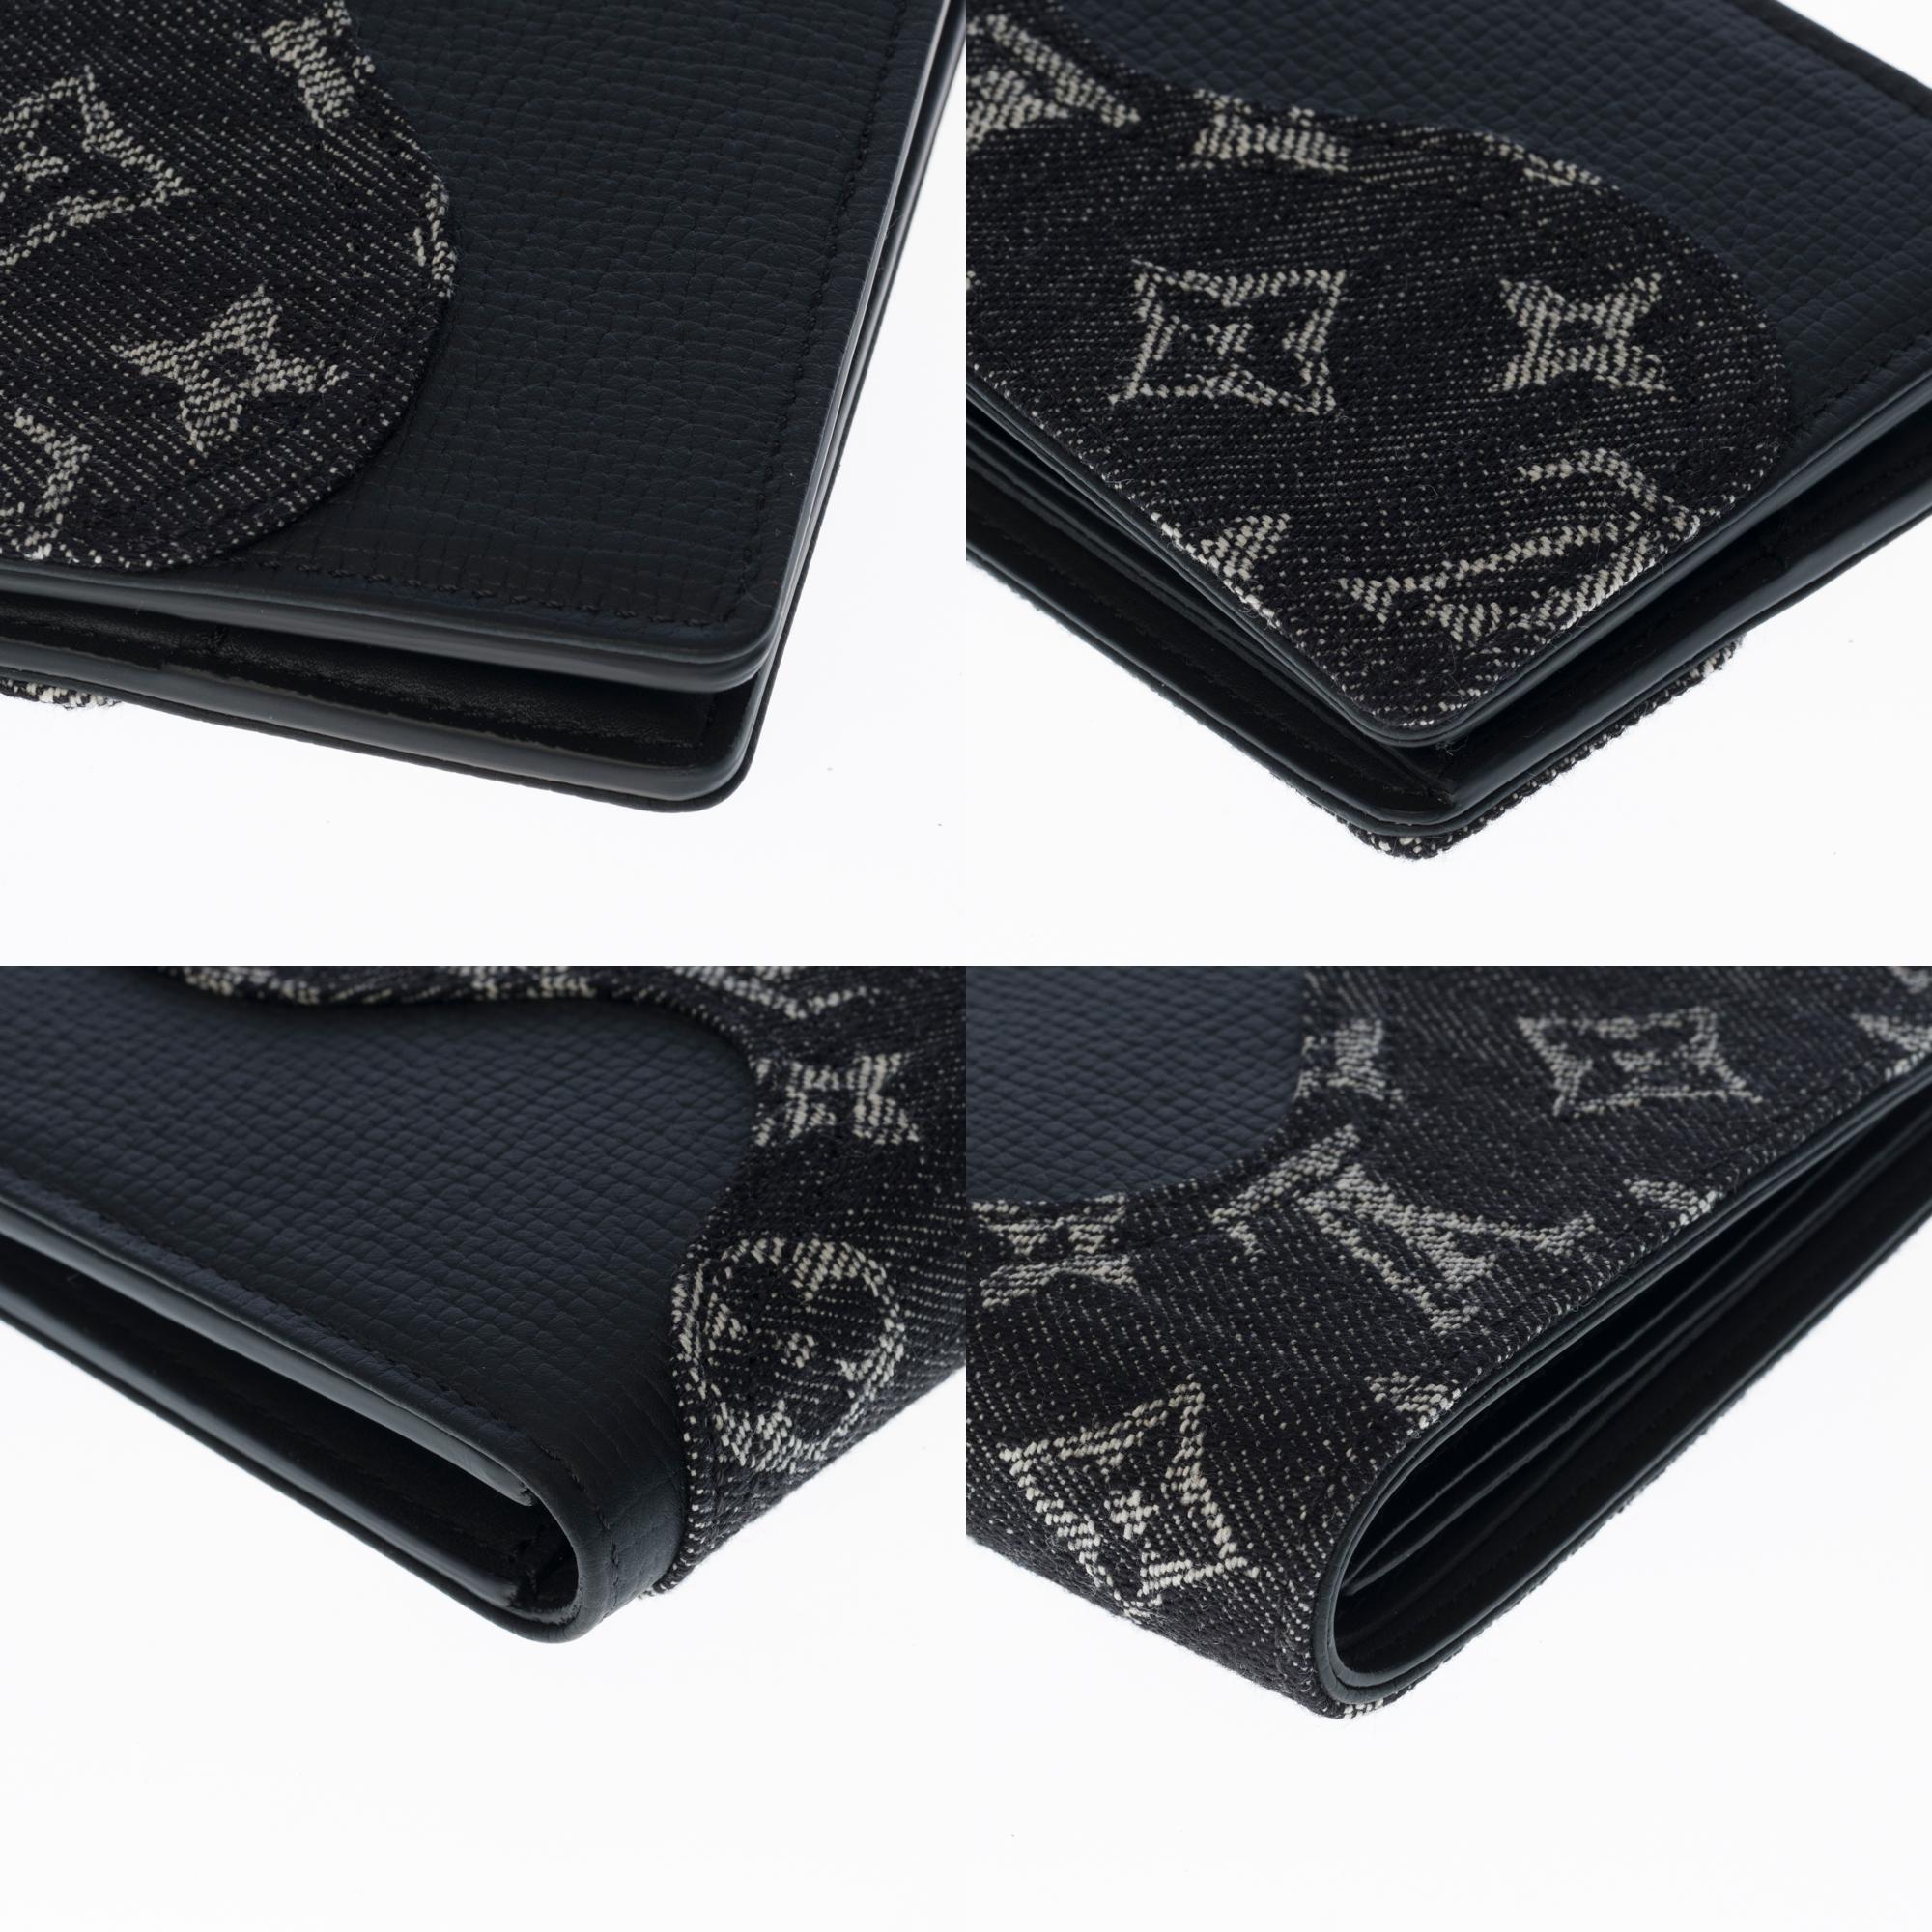 BRAND NEW- Limited edition Louis Vuitton Slender Wallet in black denim by Nigo 1